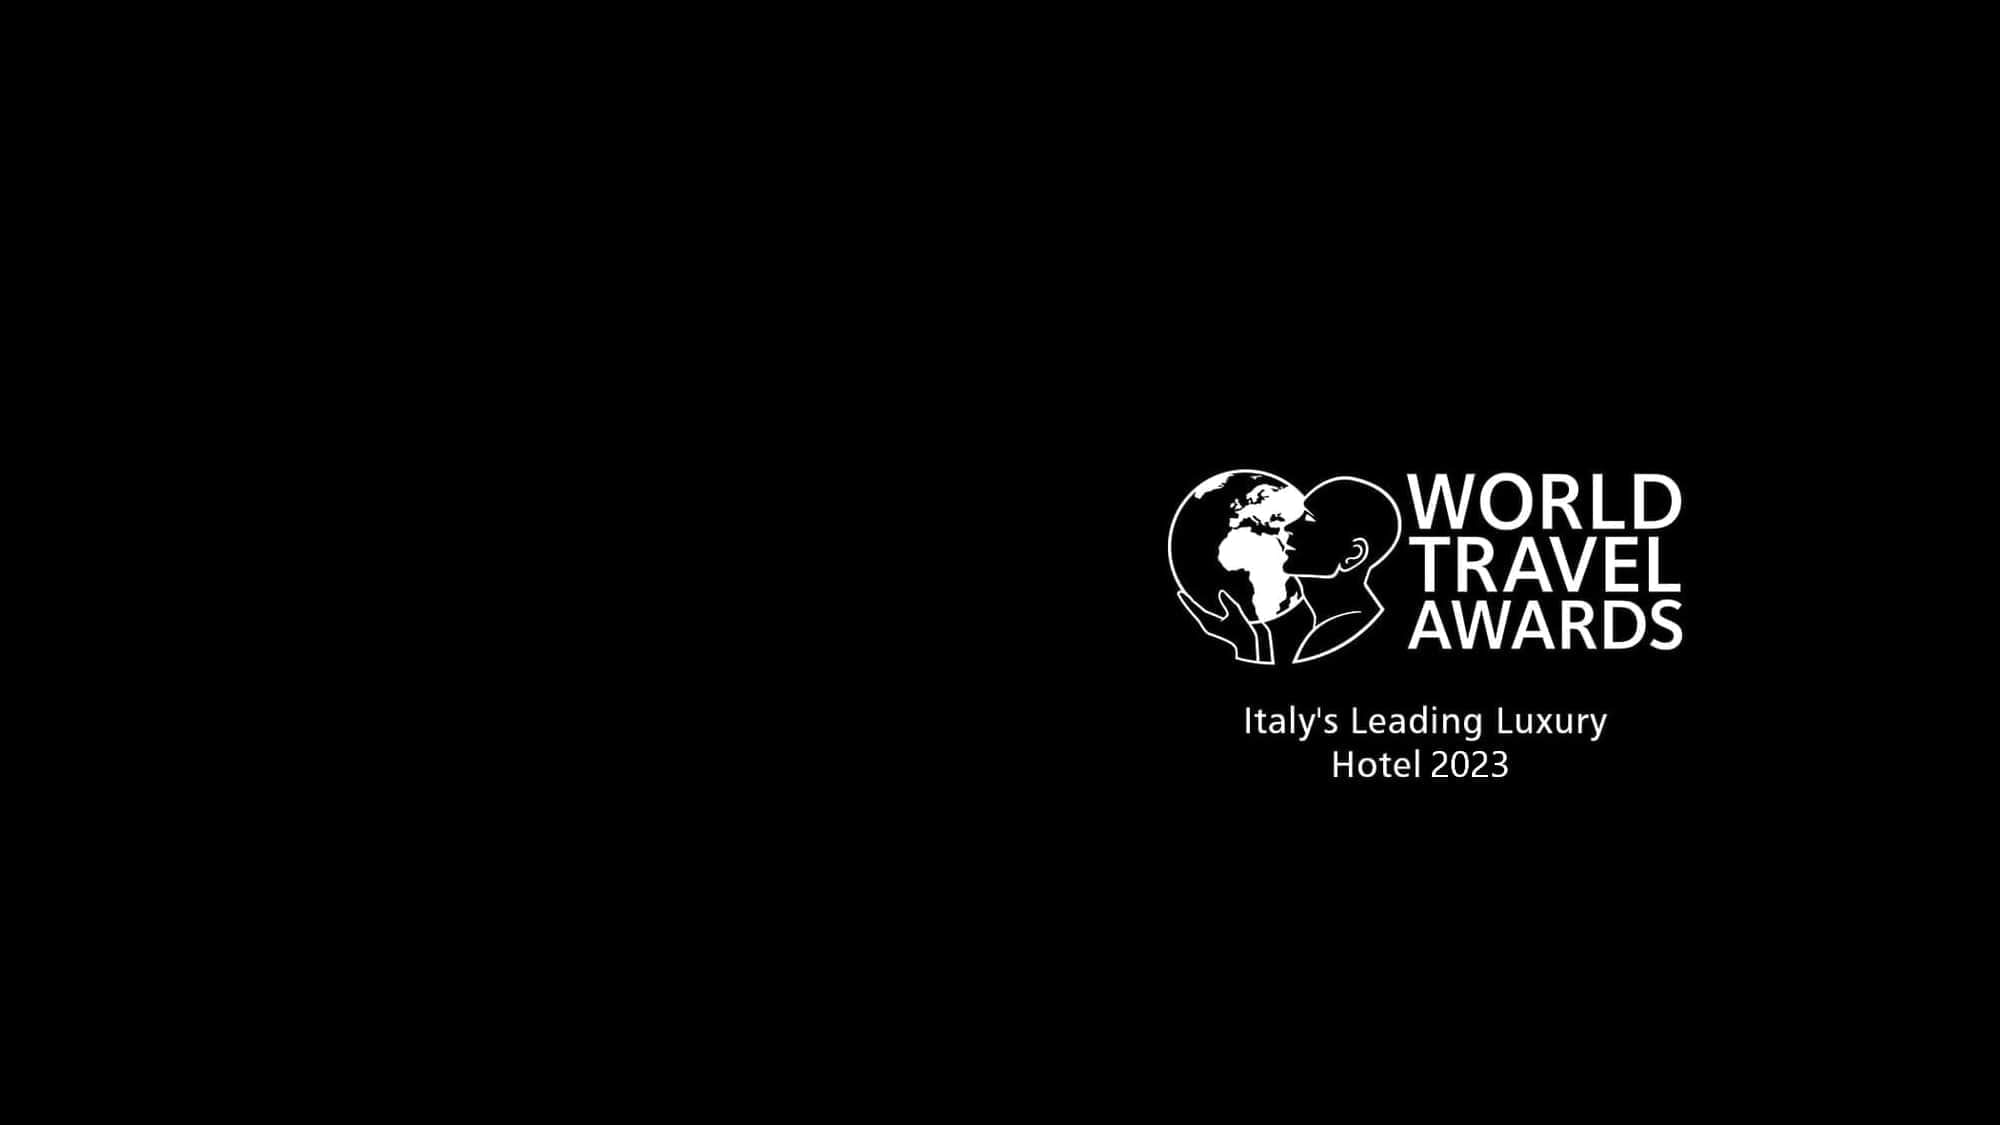 World Travel Awards: Italy’s Leading Luxury Hotel 2023